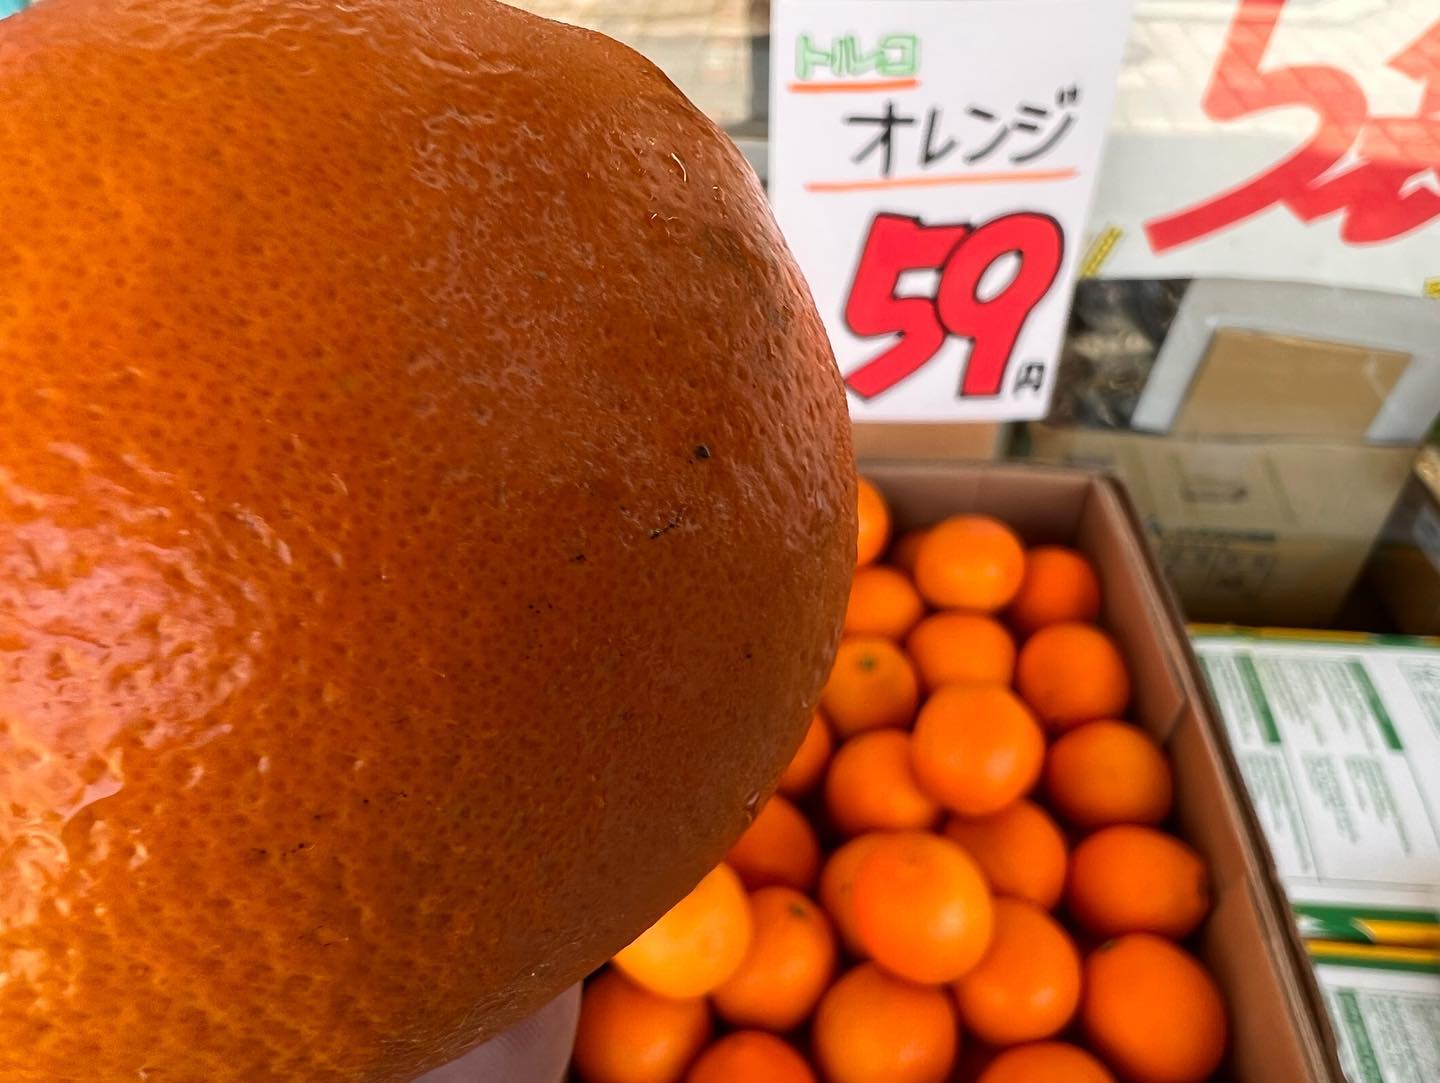 オレンジ安い️
緑のきういふるーつは580円